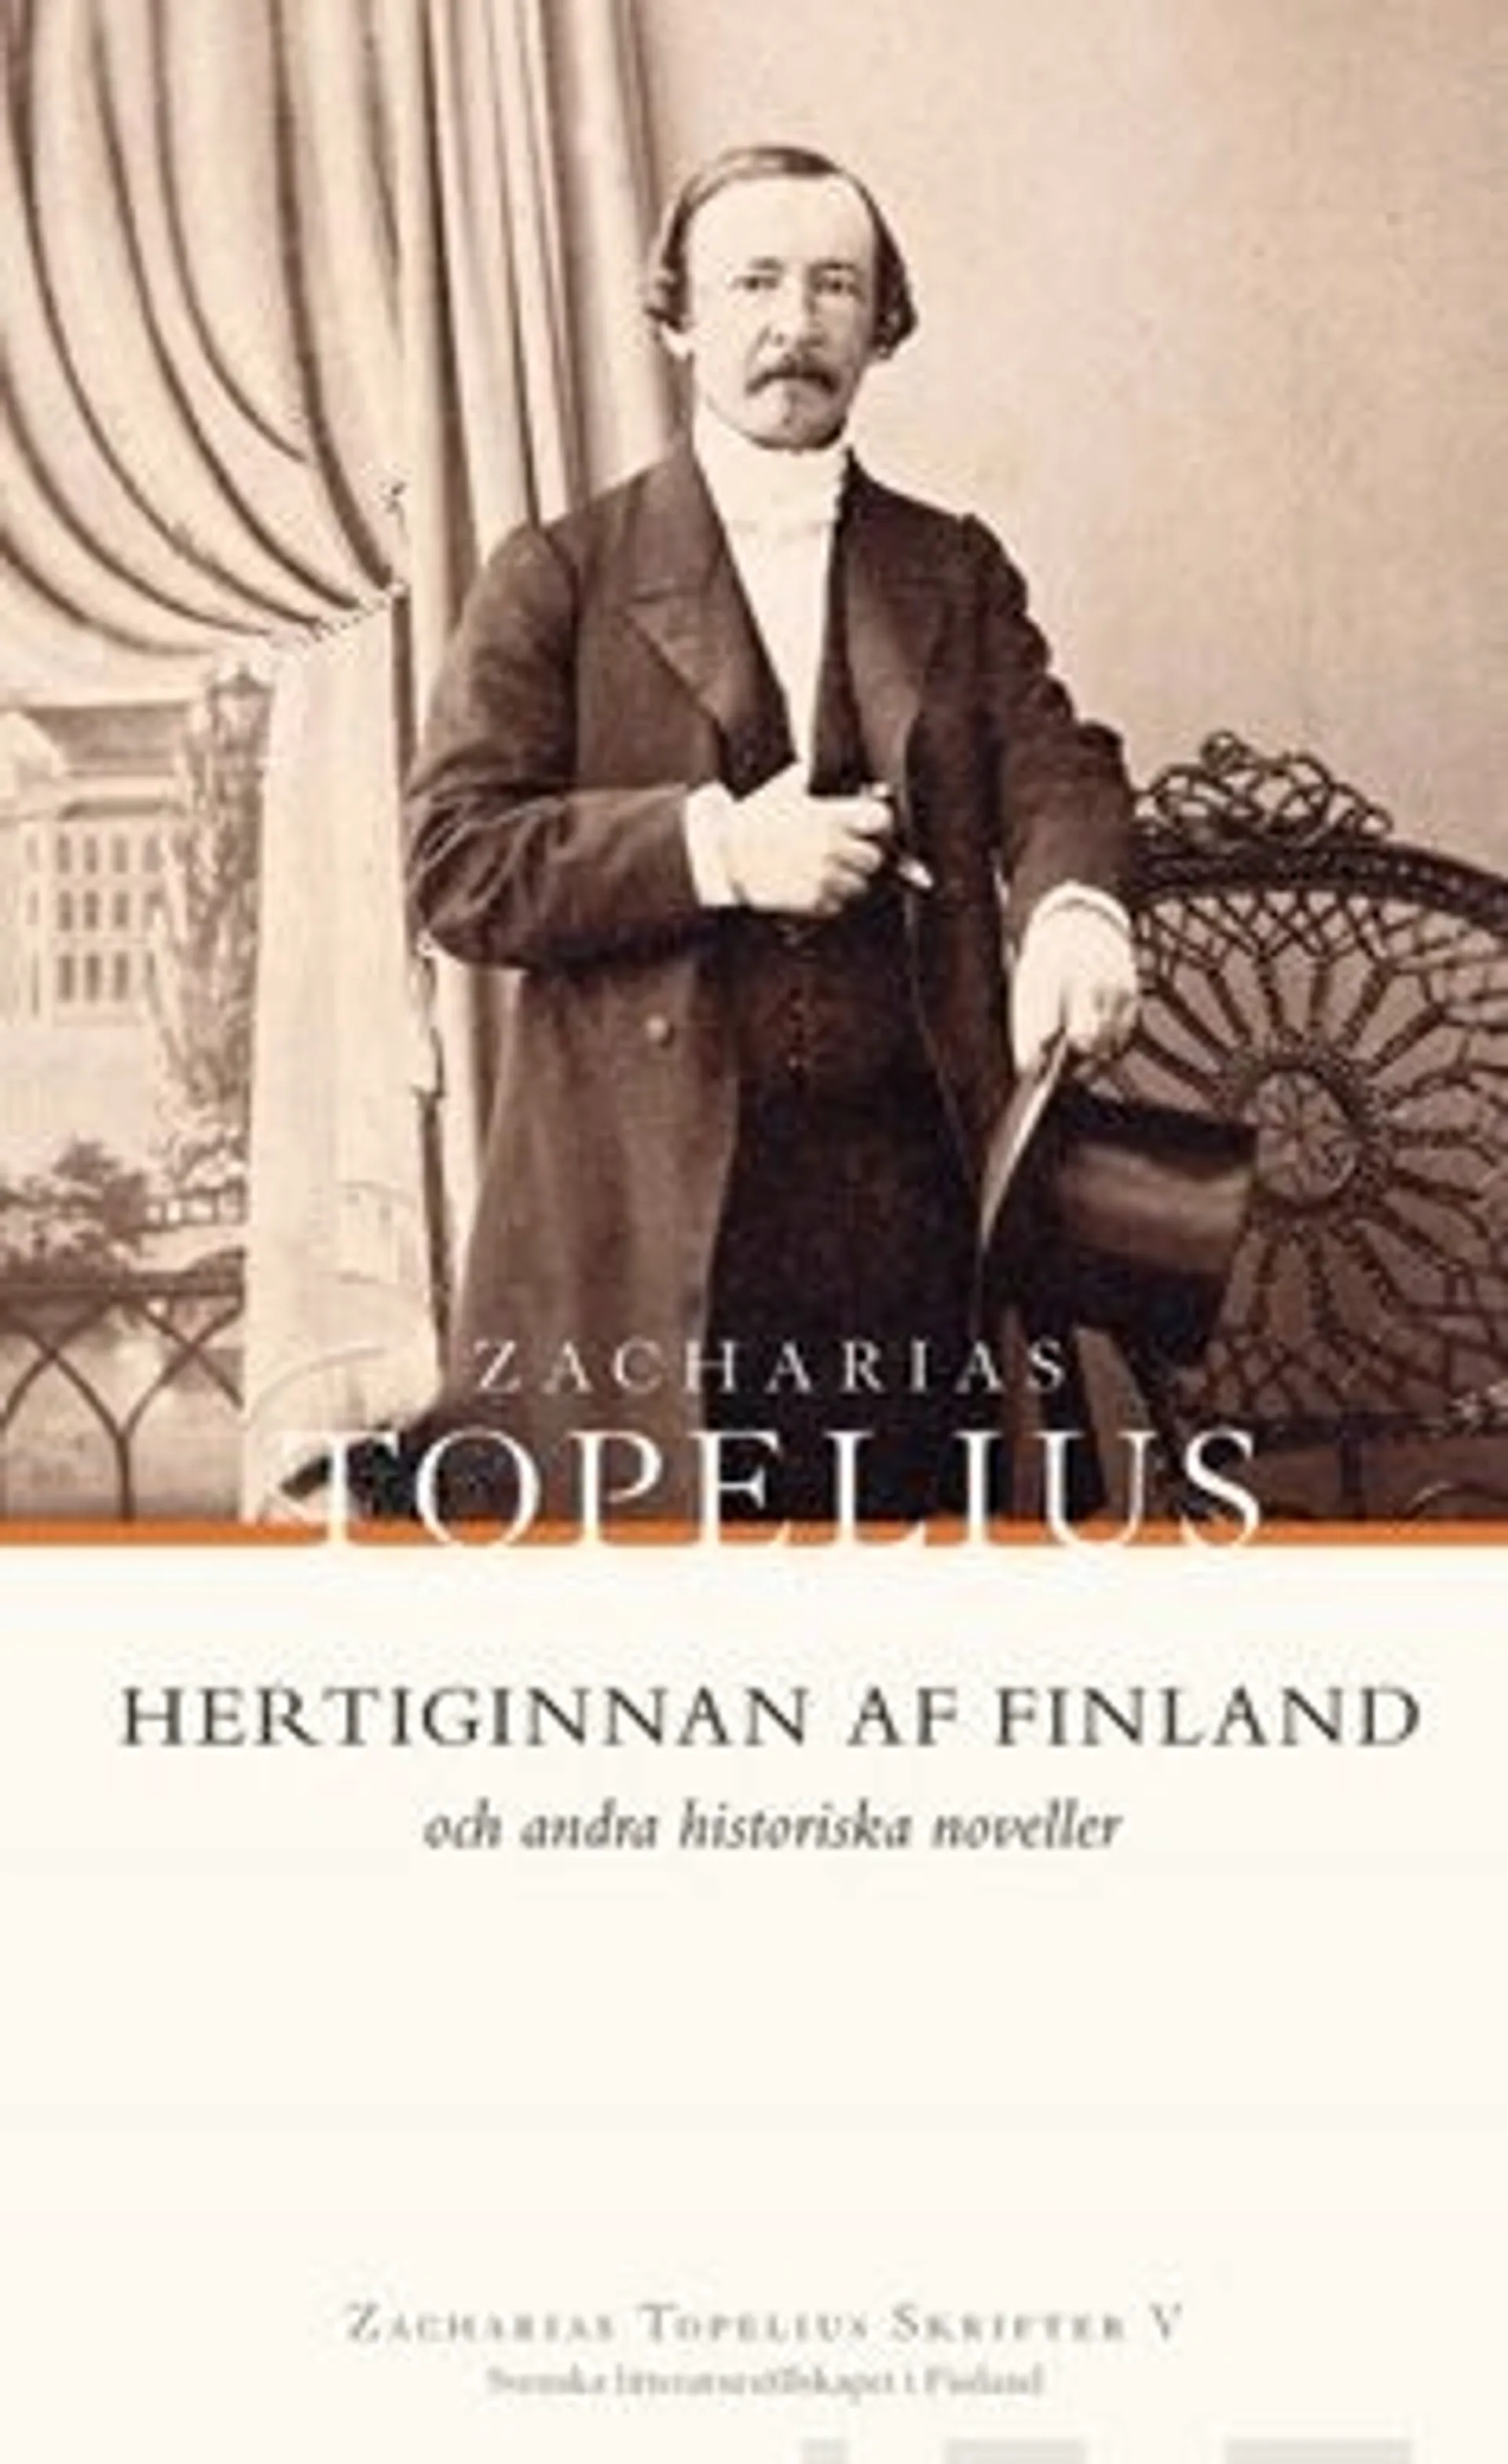 Topelius, Hertiginnan af Finland och andra historiska noveller